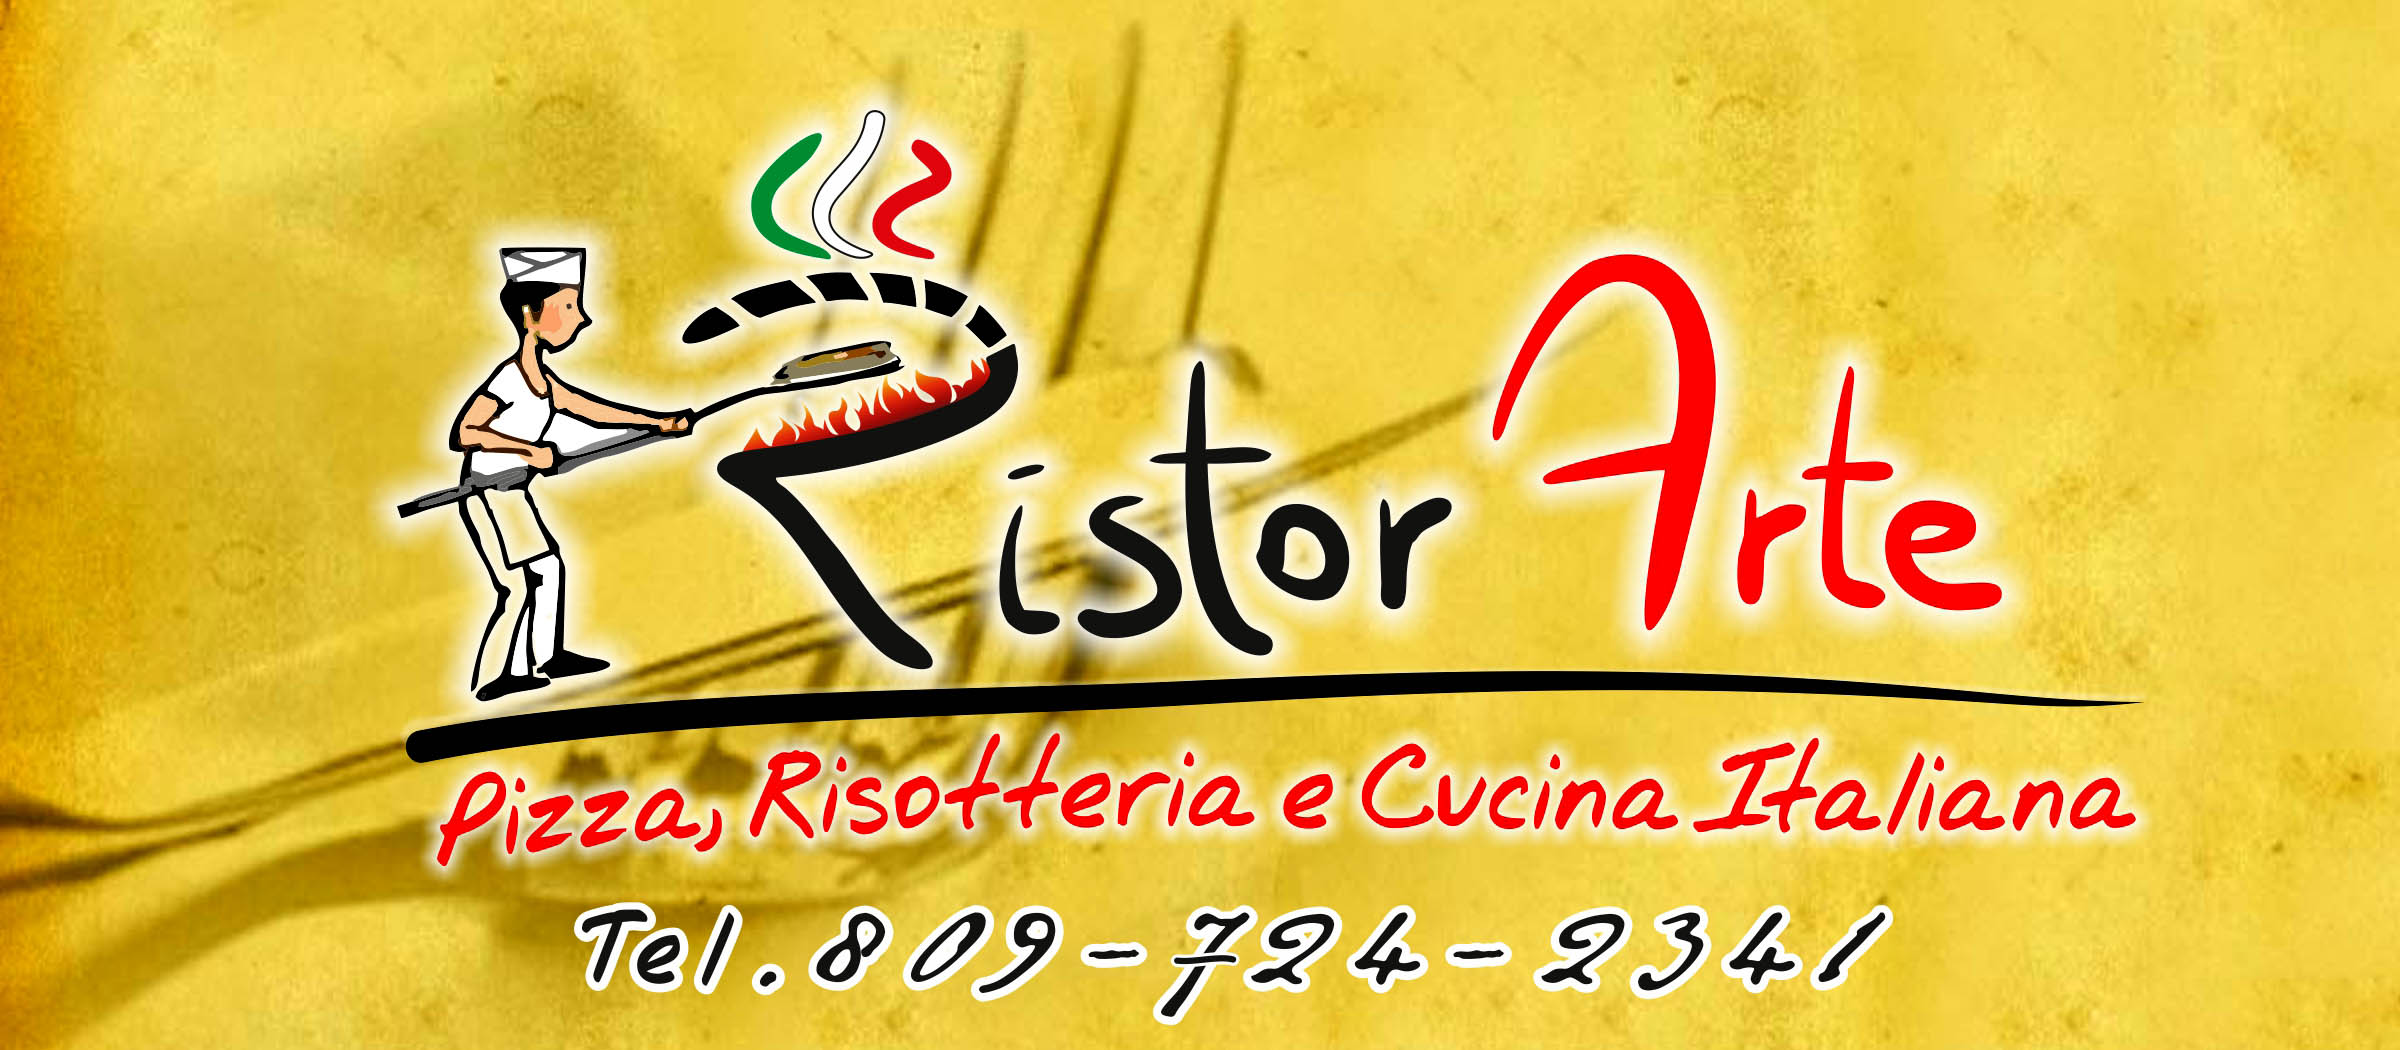 Ristor Arte Logo